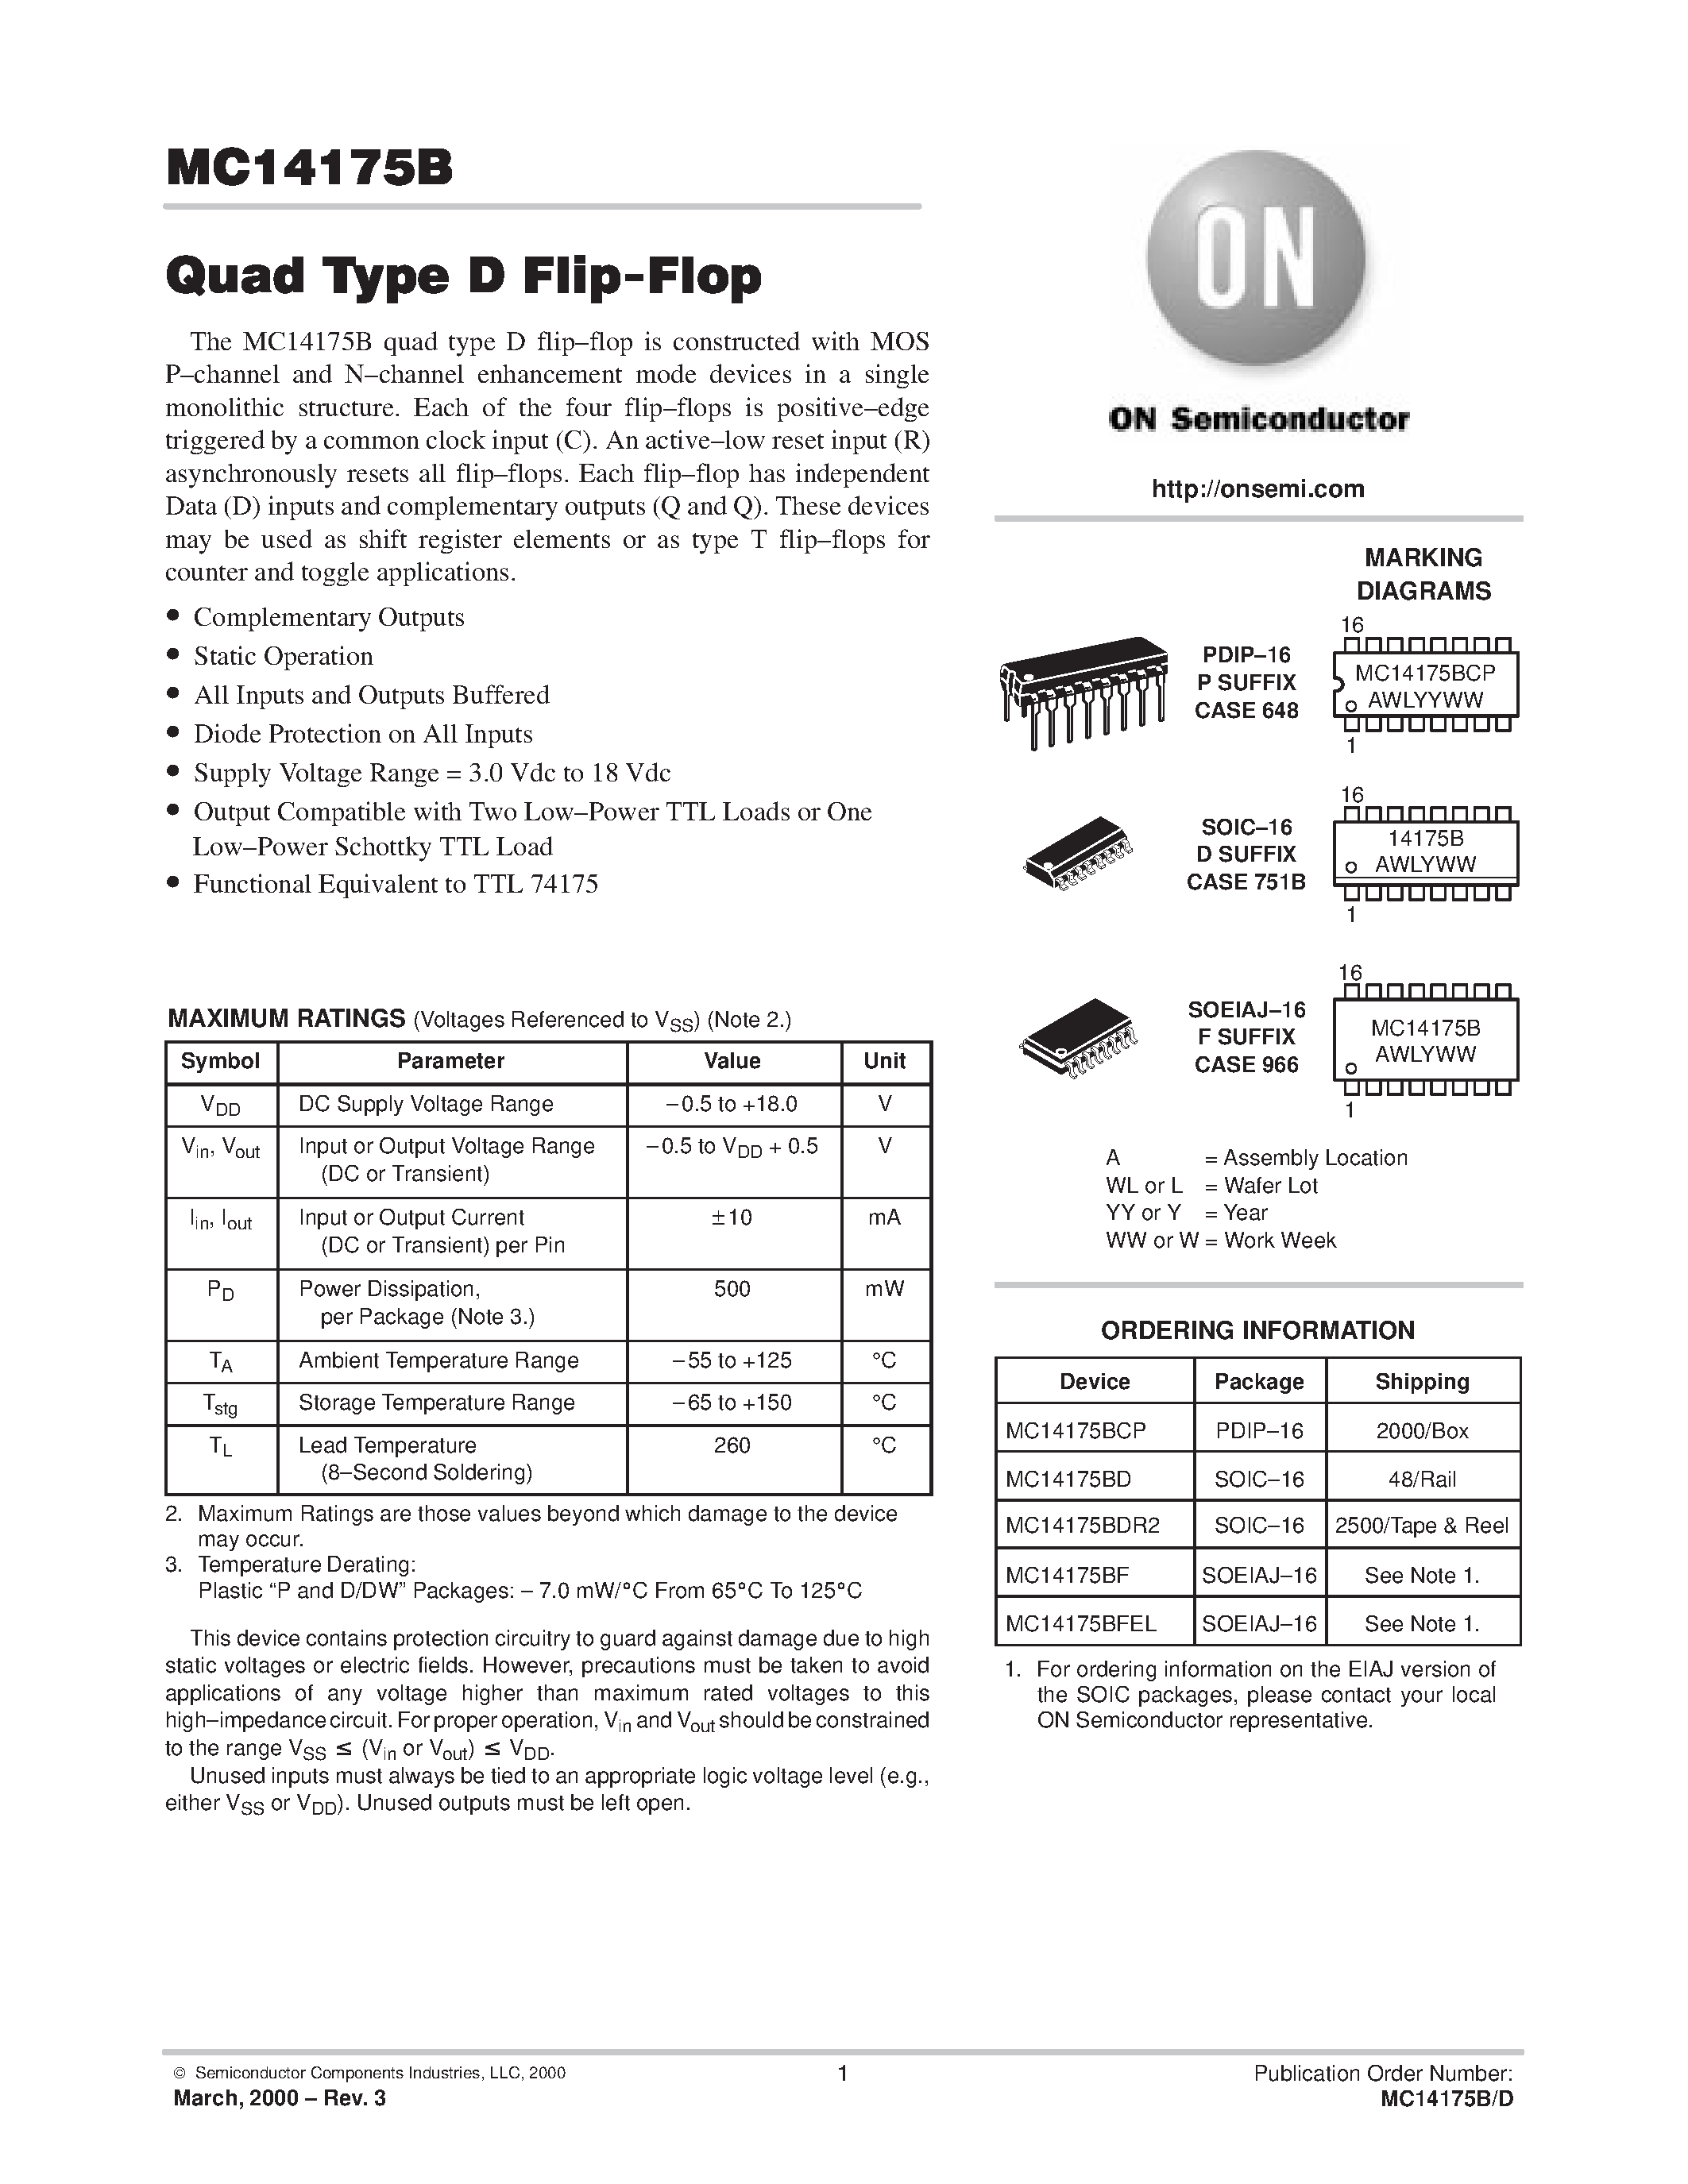 Datasheet MC14175B - Quad Type D Flip-Flop page 1